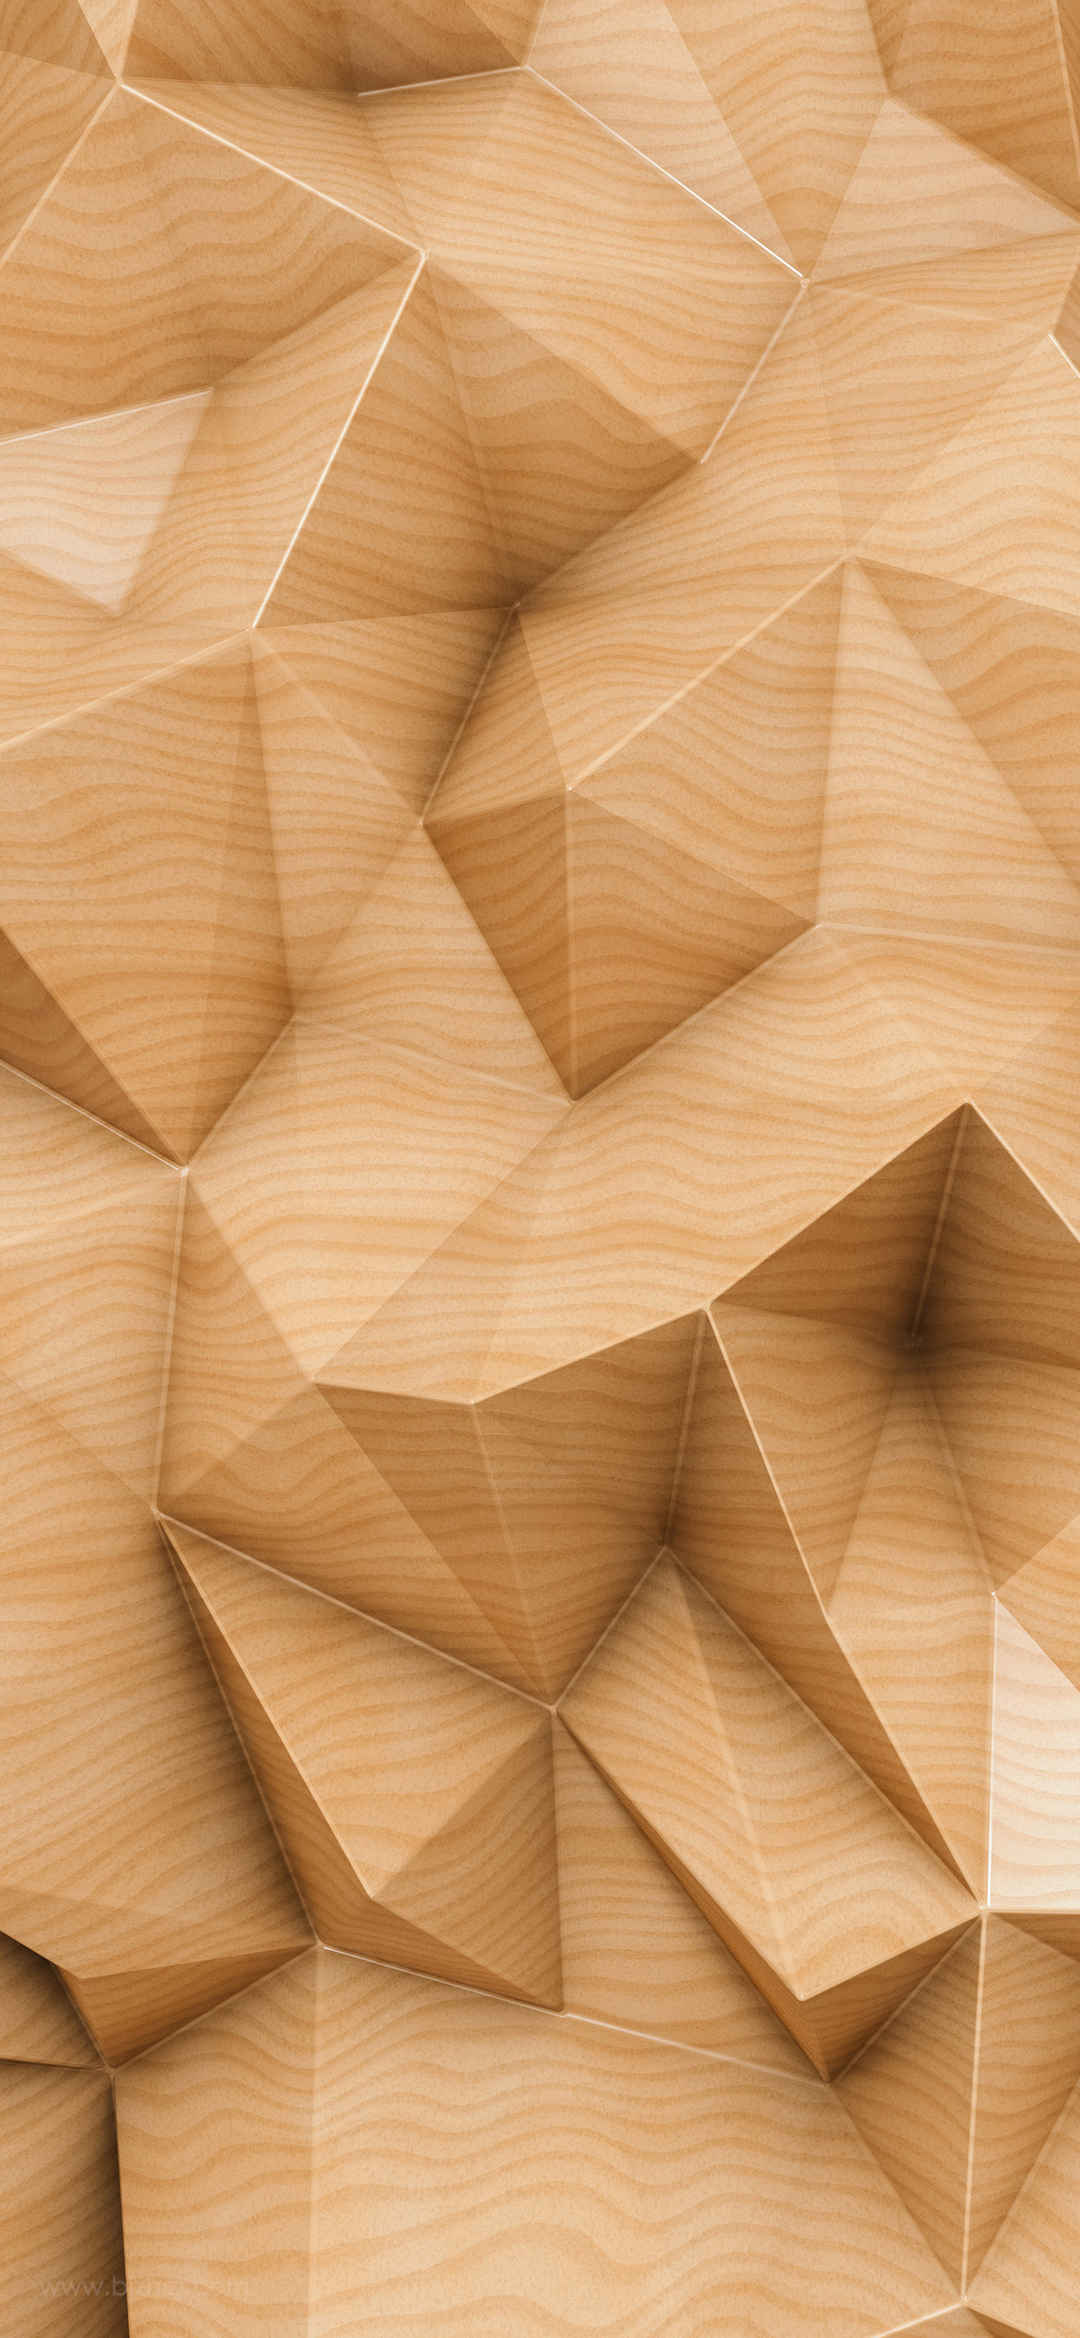 木头纹理立体效果手机壁纸-